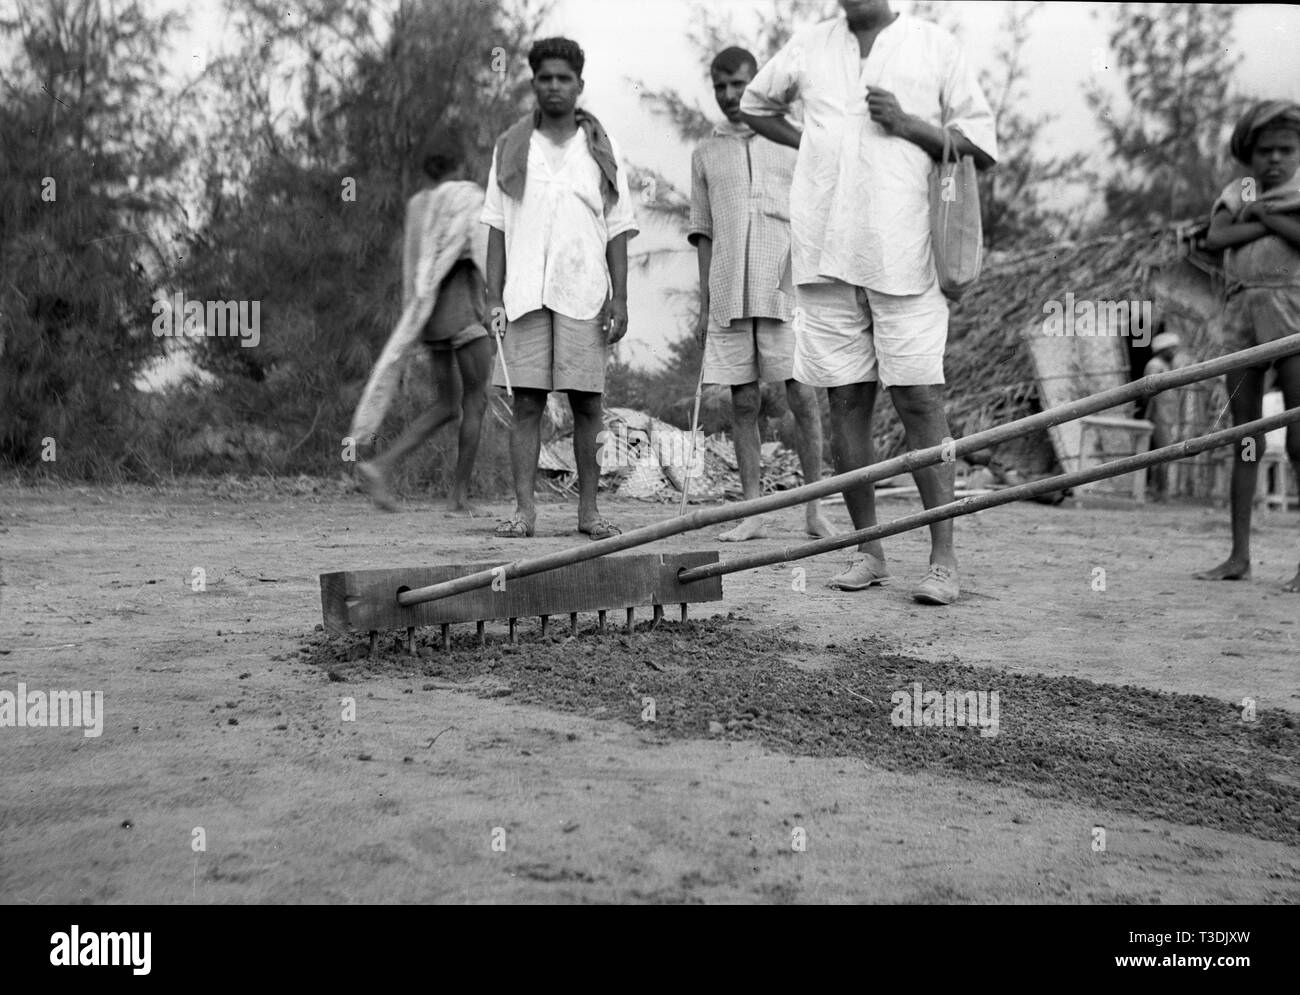 Les travailleurs des plantations semer des graines dans l'Inde britannique 1945 Banque D'Images